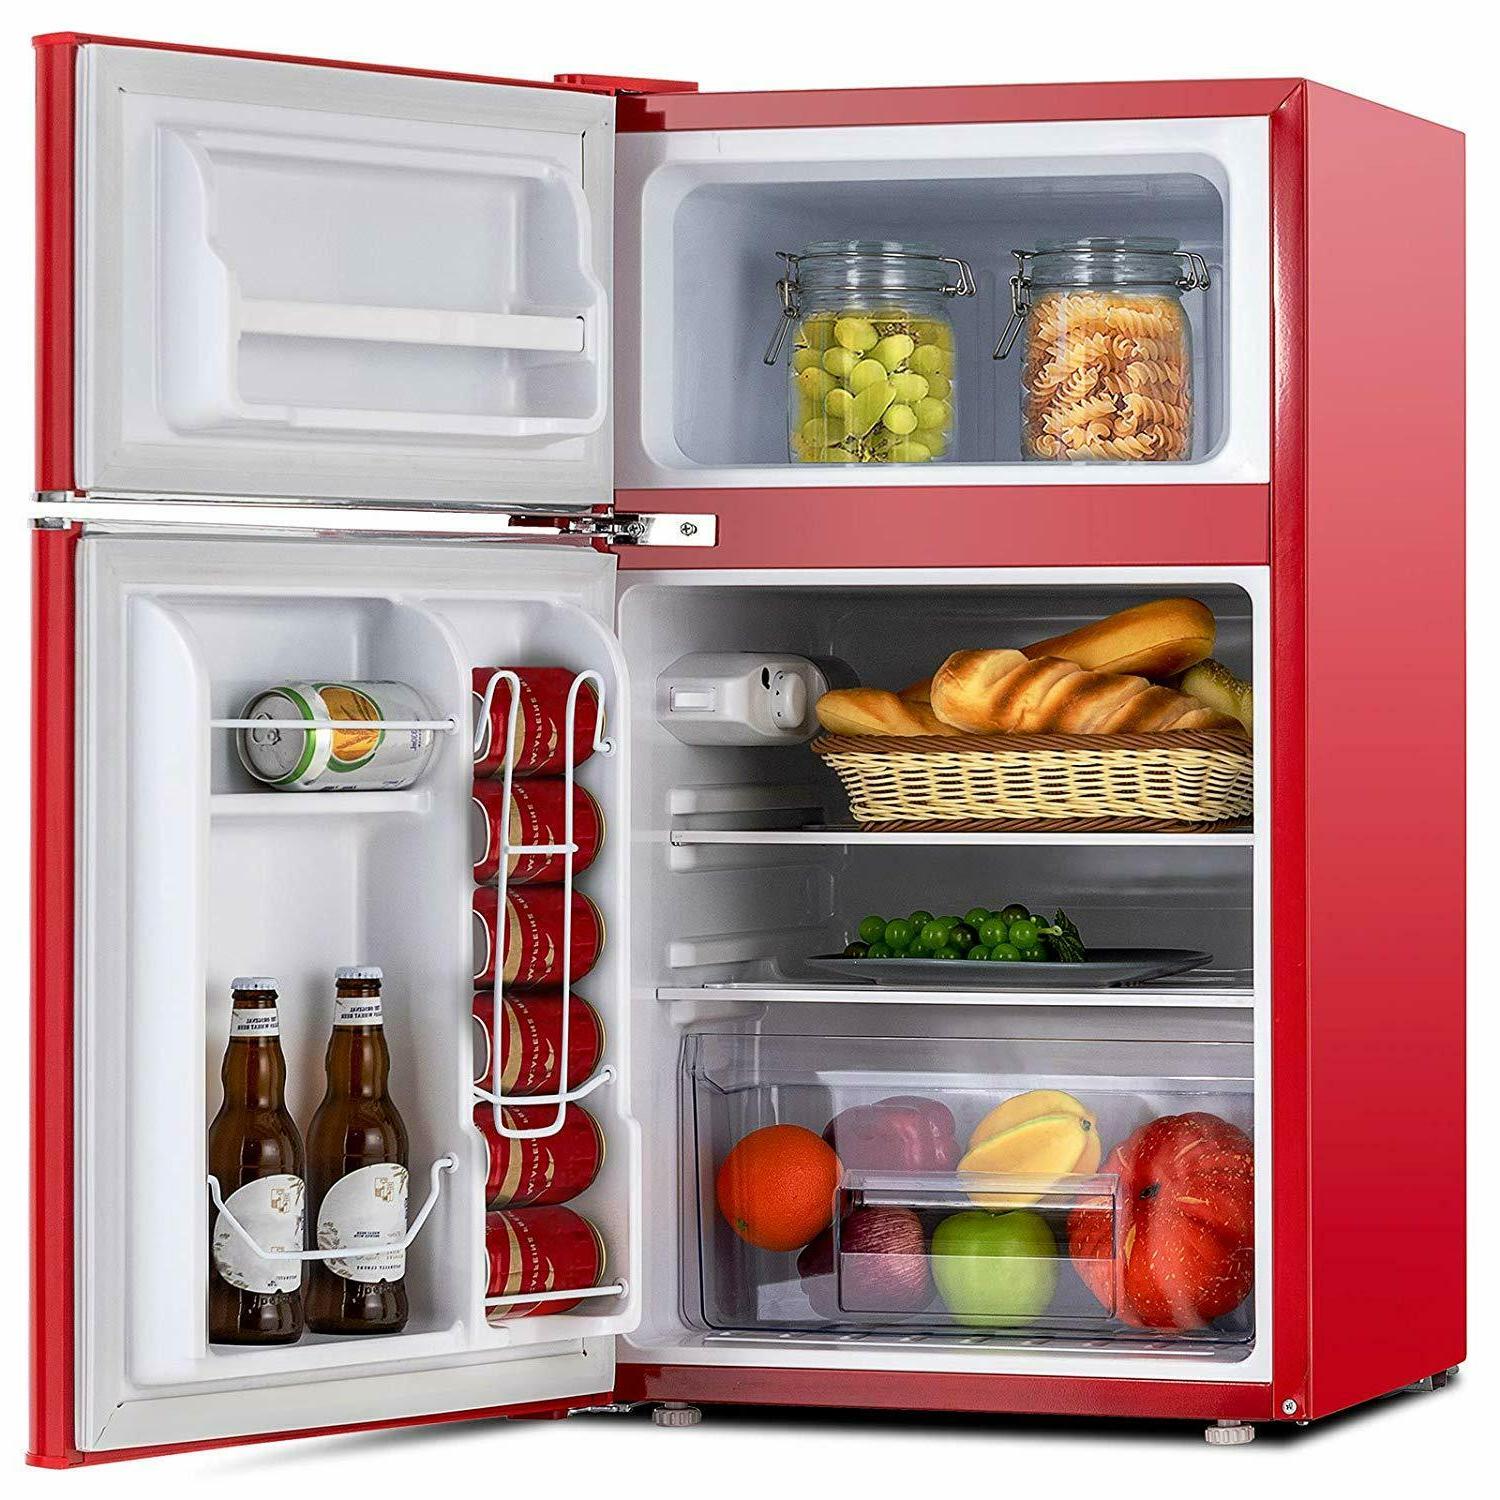 В каких магазинах можно купить холодильники. Холодильник Freezer Refrigerator. Мини холодильник самсунг. Холодильник eu na Retro Mini Fridge. Холодильник Euna Retro Mini Fridge.